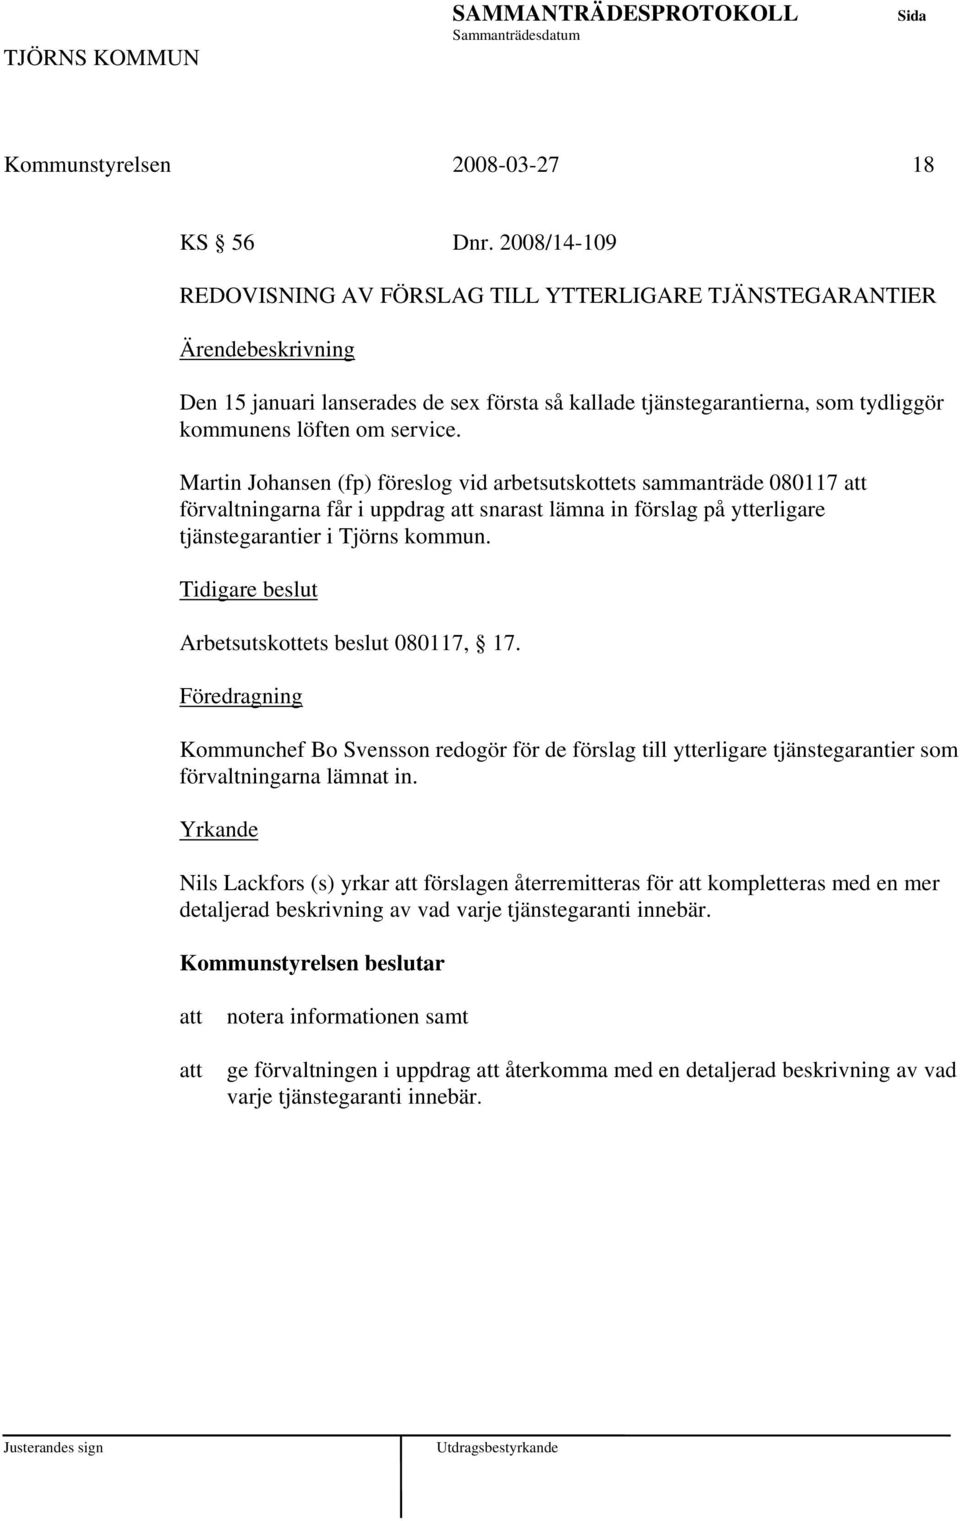 Martin Johansen (fp) föreslog vid arbetsutskottets sammanträde 080117 förvaltningarna får i uppdrag snarast lämna in förslag på ytterligare tjänstegarantier i Tjörns kommun.